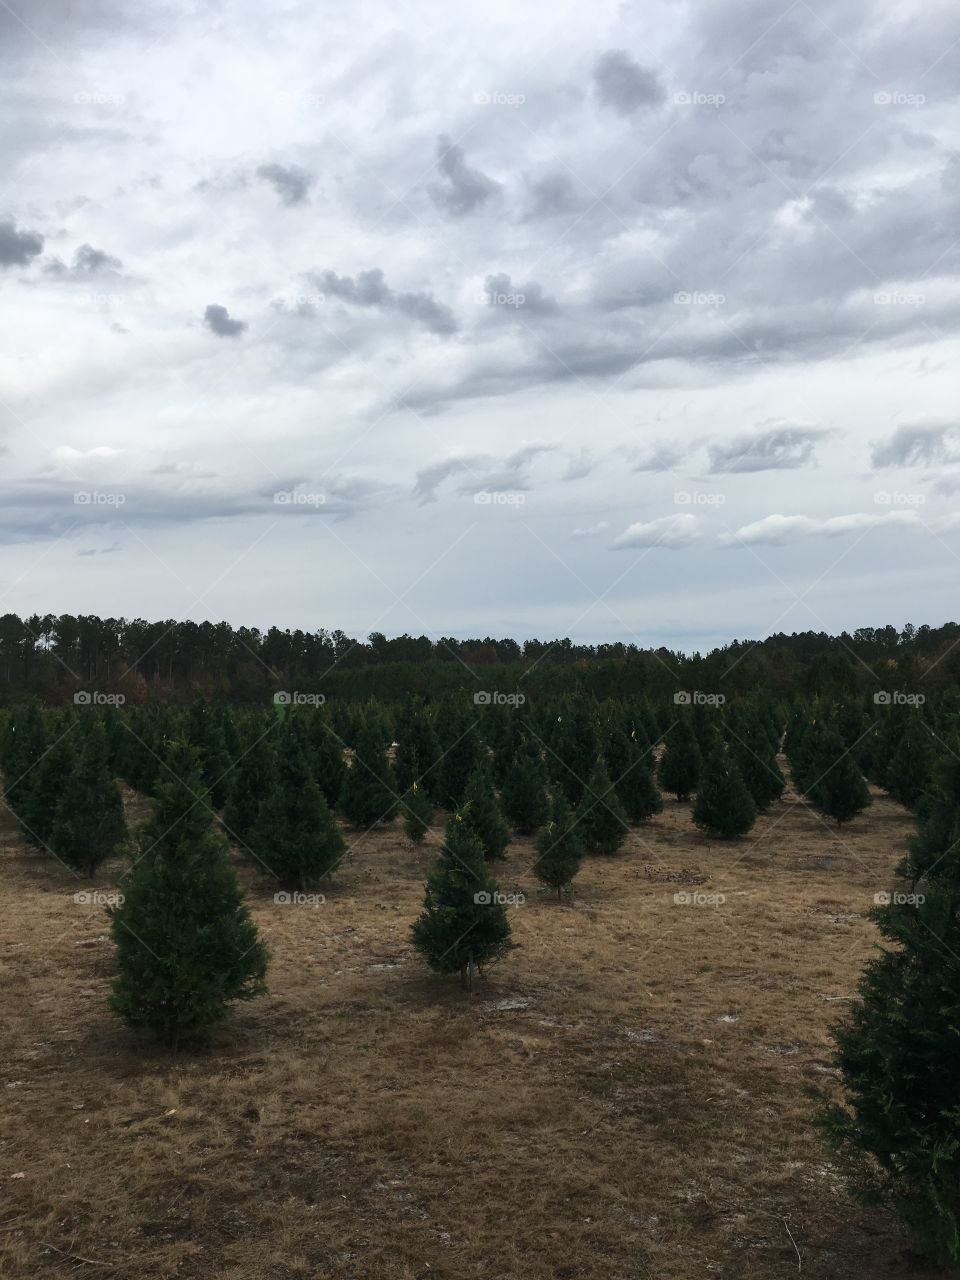 Christmas tree farm! Happy hunting!